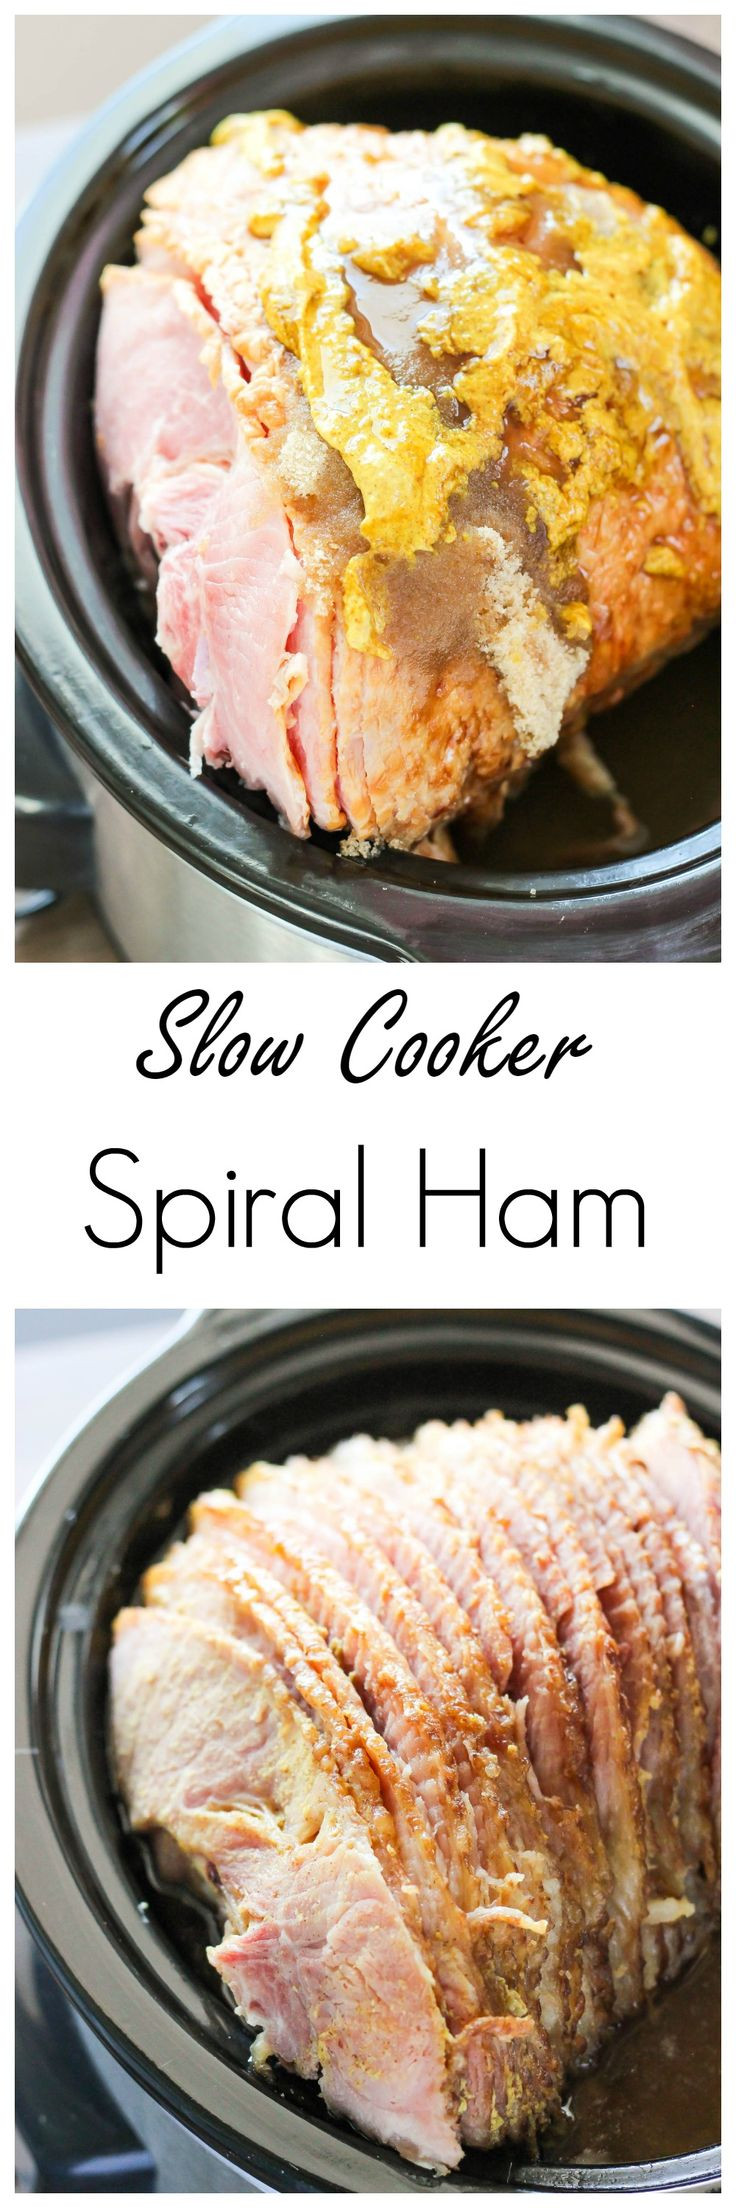 Easter Ham Crock Pot Recipes
 Slow Cooker Spiral Ham